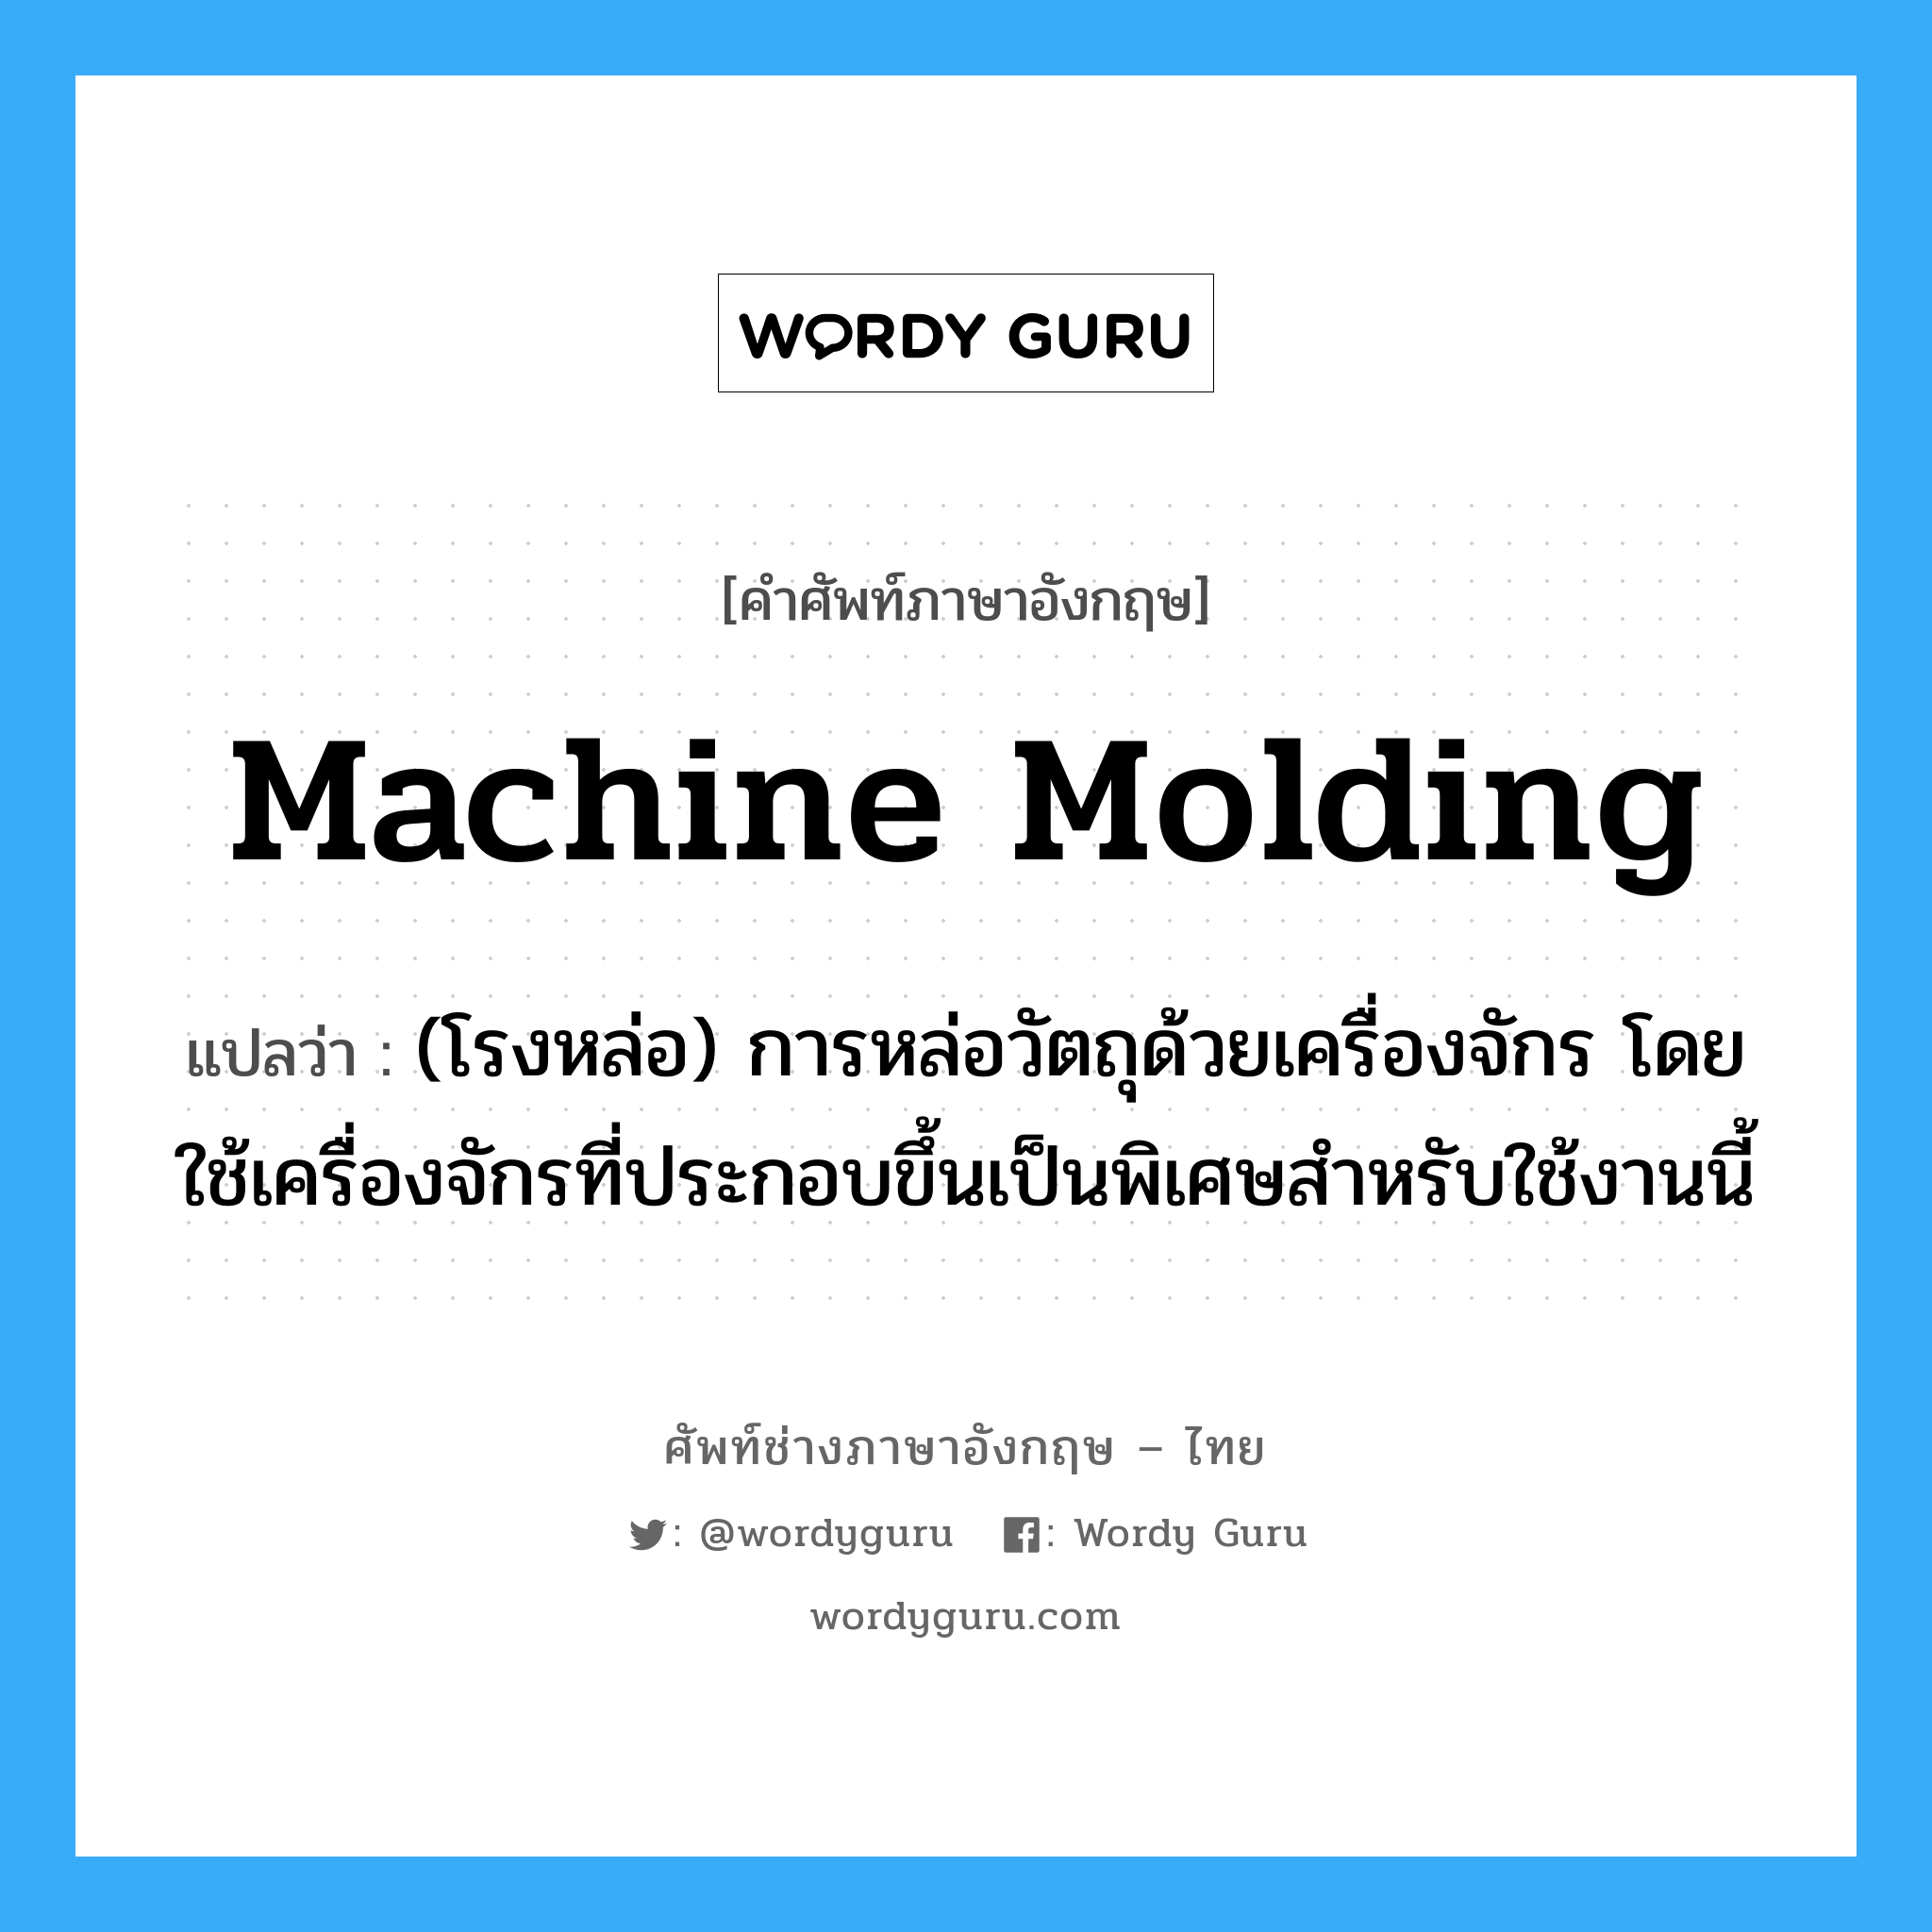 machine molding แปลว่า?, คำศัพท์ช่างภาษาอังกฤษ - ไทย machine molding คำศัพท์ภาษาอังกฤษ machine molding แปลว่า (โรงหล่อ) การหล่อวัตถุด้วยเครื่องจักร โดยใช้เครื่องจักรที่ประกอบขึ้นเป็นพิเศษสำหรับใช้งานนี้